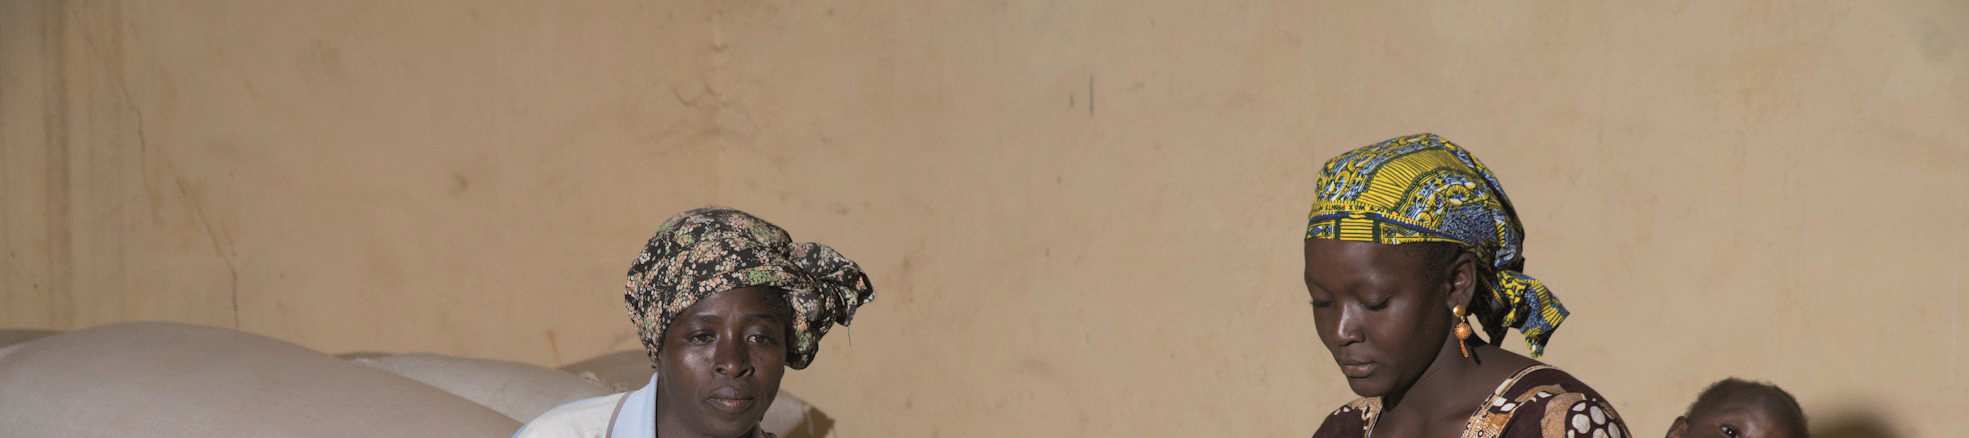 N A D I N E G Ü N T H E R Frauen in Burkina Faso beim Getreidekauf GIZ / Klaus Wohlmann Nicht zuletzt ist es sinnvoll, Frauen zu mehr Kontrolle über das Haushaltsbudget zu verhelfen, da es sich